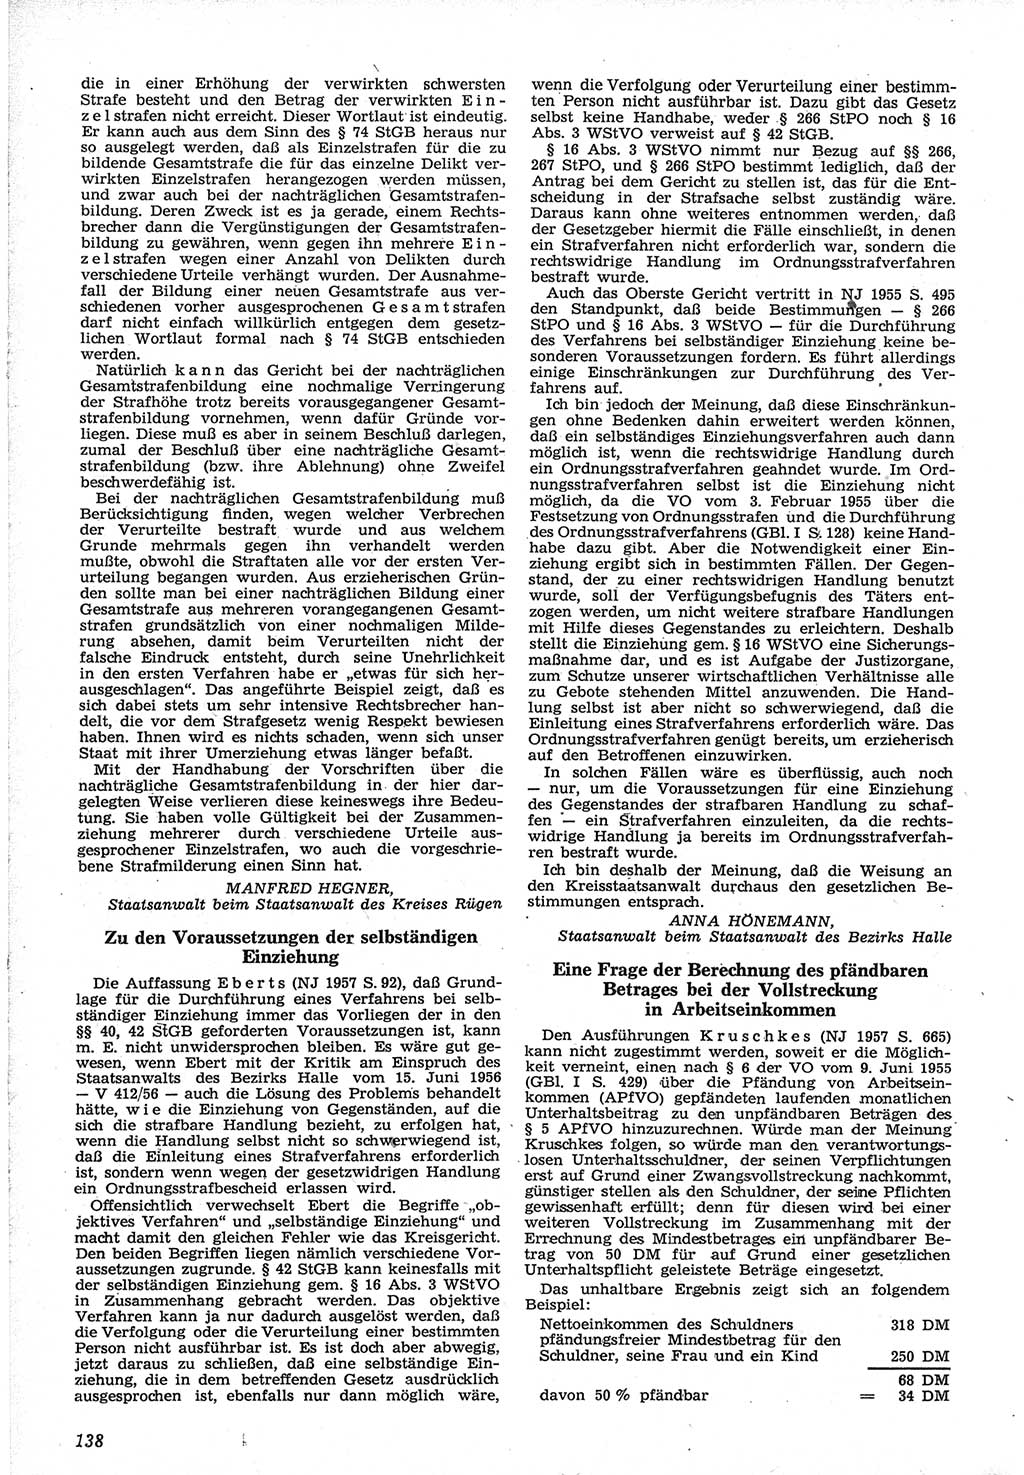 Neue Justiz (NJ), Zeitschrift für Recht und Rechtswissenschaft [Deutsche Demokratische Republik (DDR)], 12. Jahrgang 1958, Seite 138 (NJ DDR 1958, S. 138)